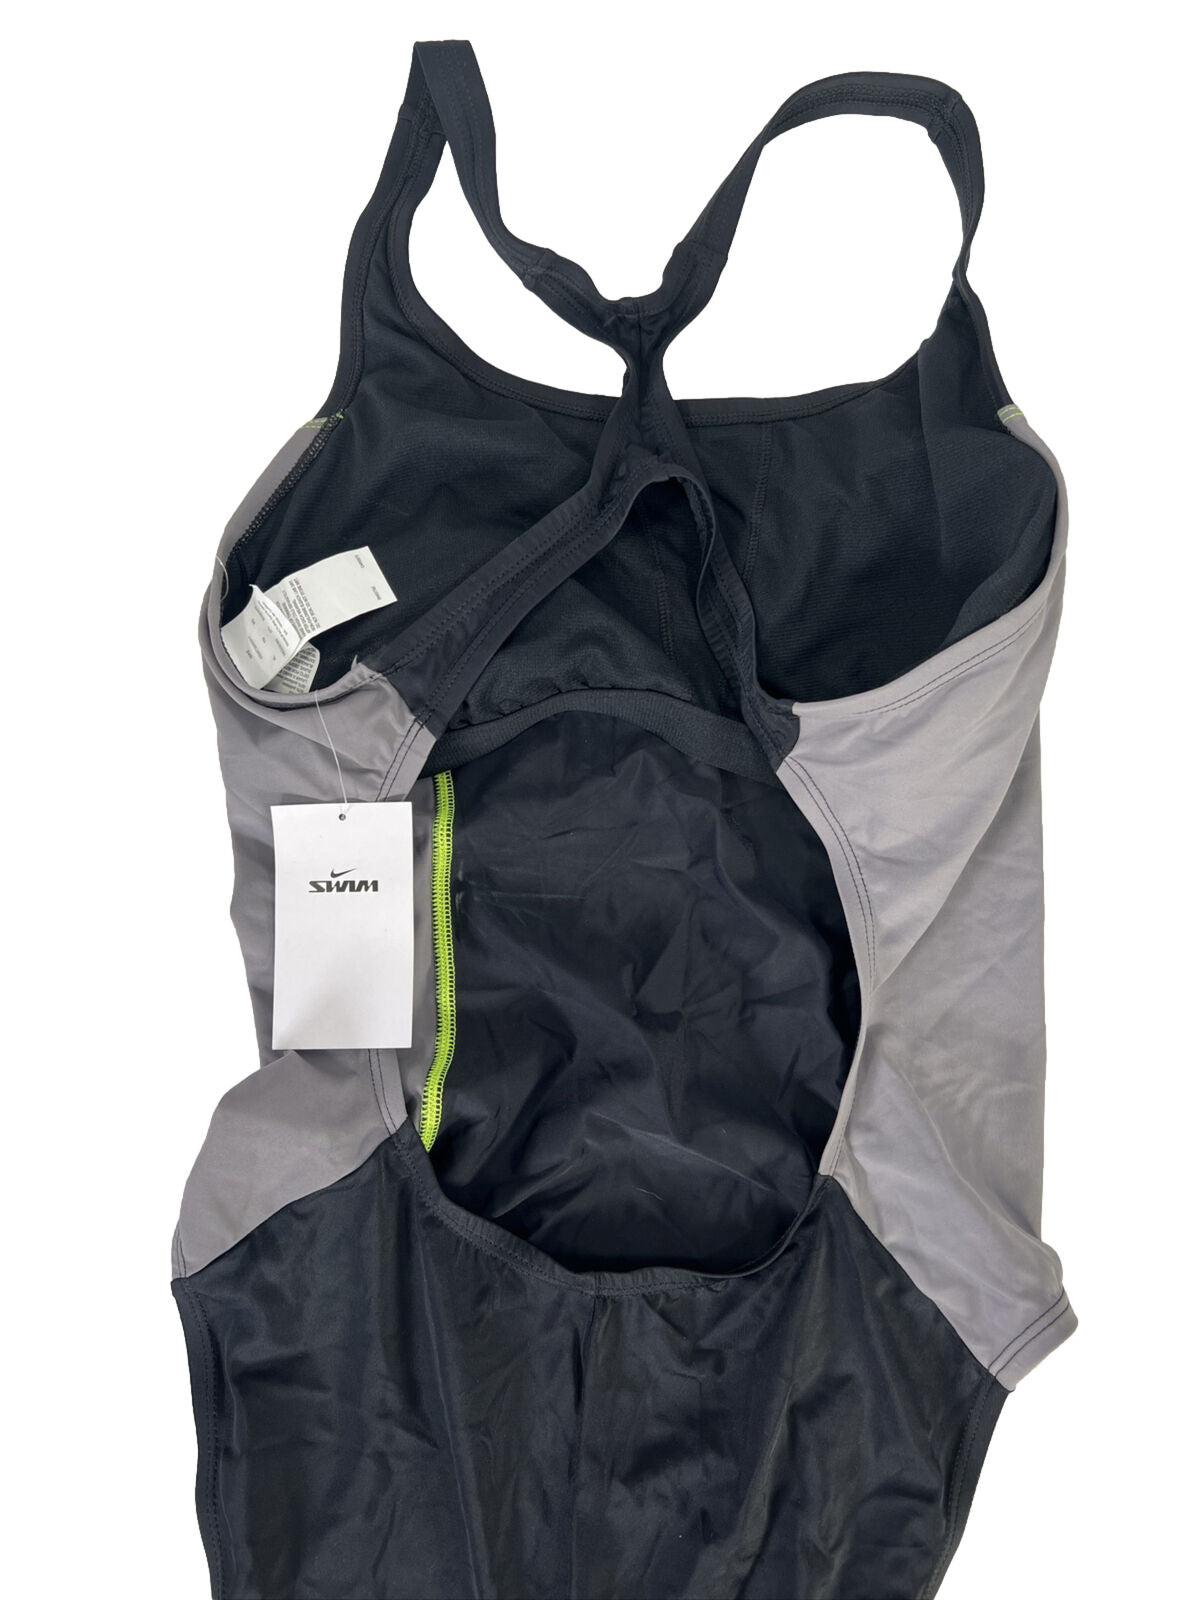 NUEVO Traje de baño de una pieza Nike Color Surge Powerback para mujer en negro/gris - XL